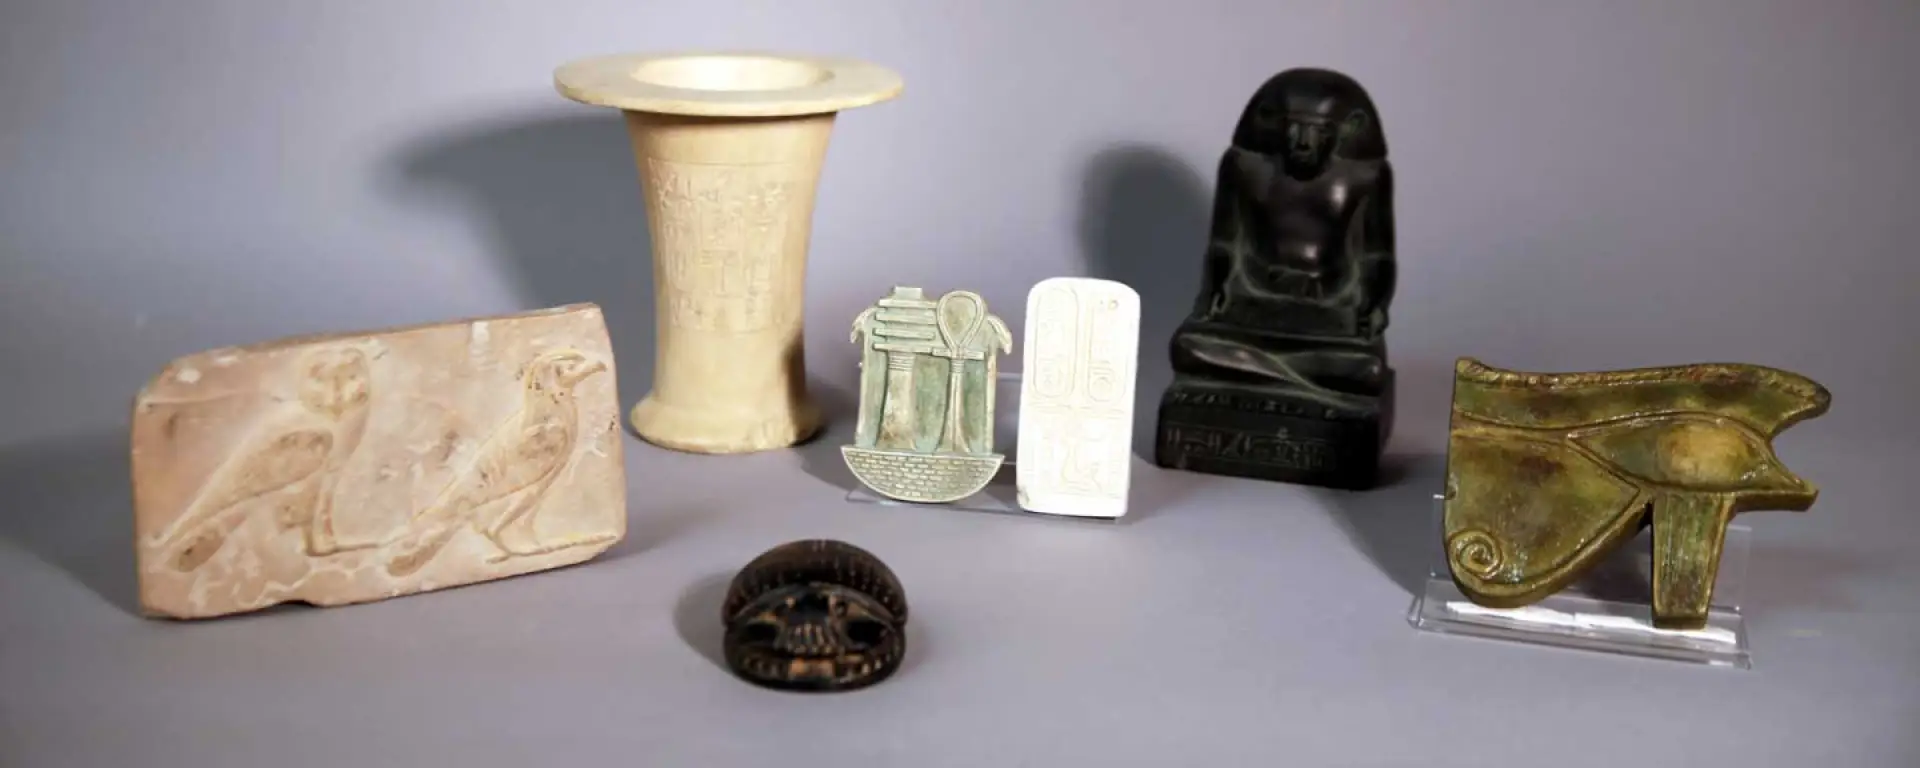 Verschiedene Objekte, teils mit Hieroglyphen